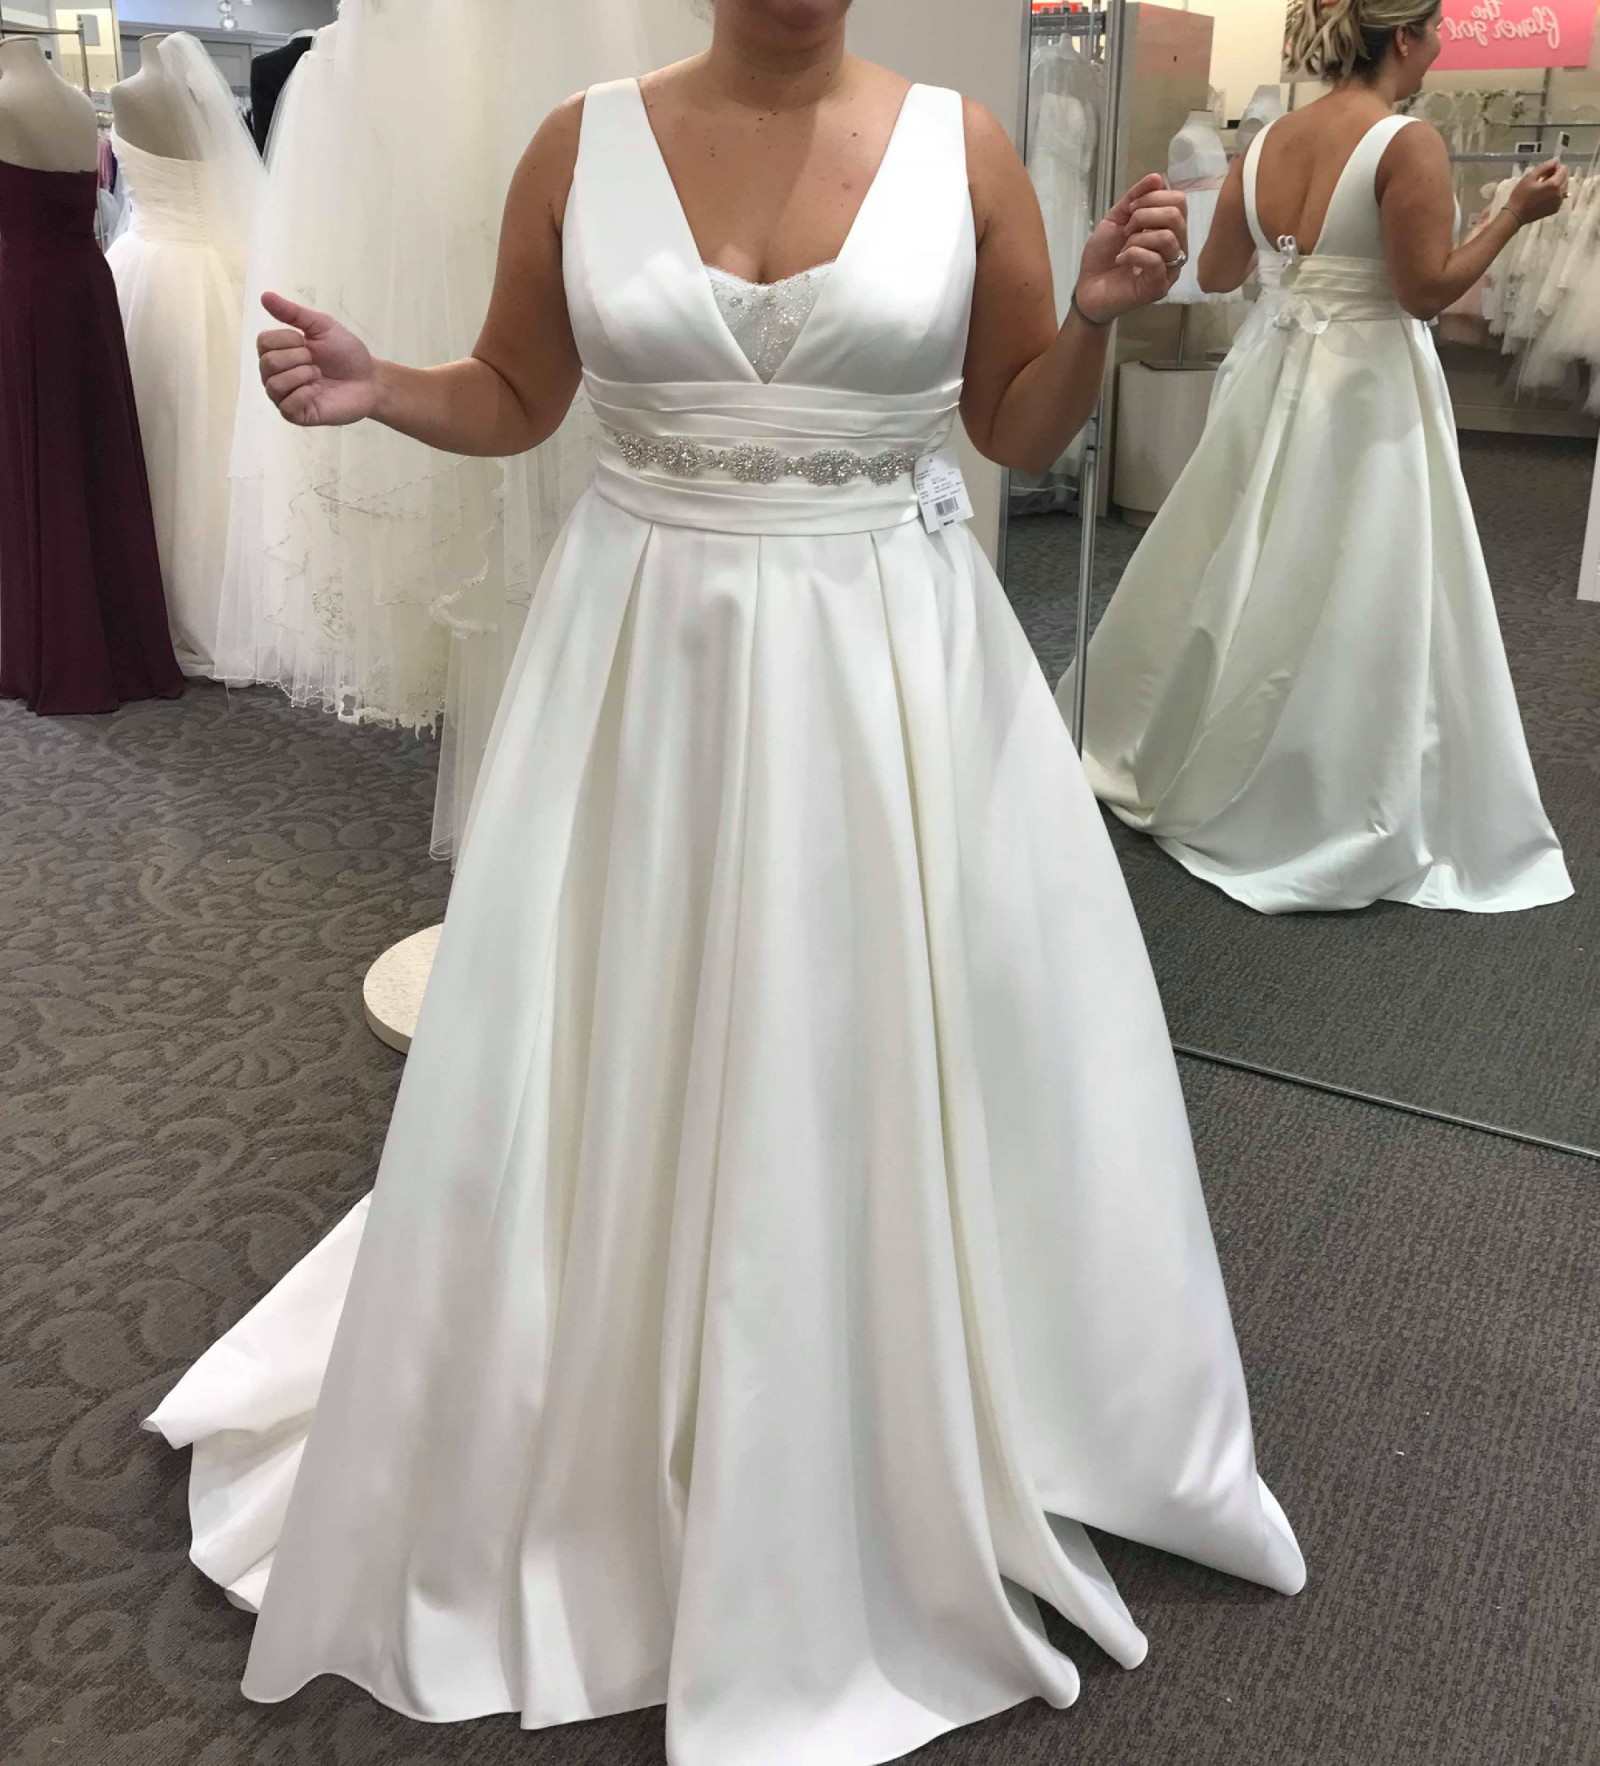 David S Bridal Collection Satin Cummerbund Ball Gown New Wedding Dress Stillwhite